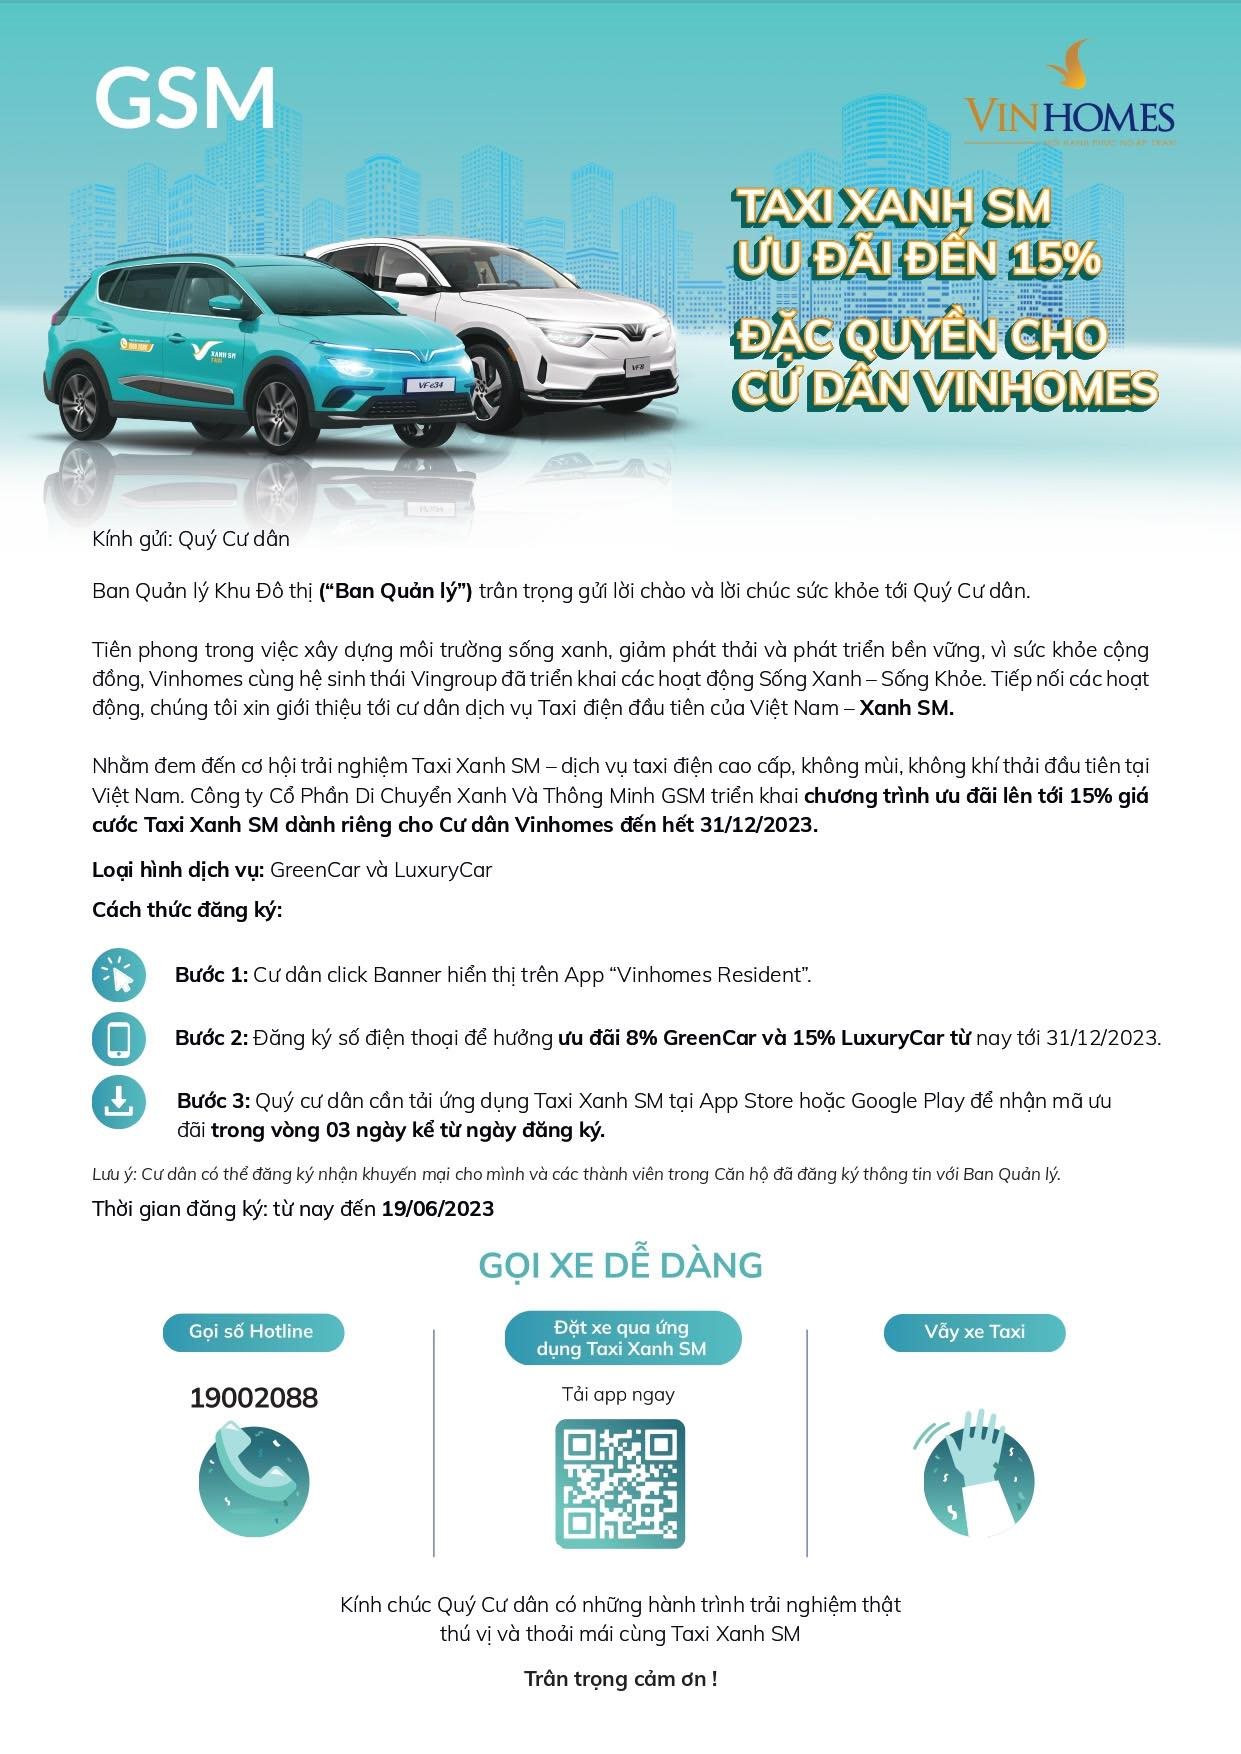 Taxi điện GSM mạnh tay ưu đãi 15% giá cước, đặc quyền chỉ dành riêng cho cư dân tại Vinhomes - Ảnh 1.